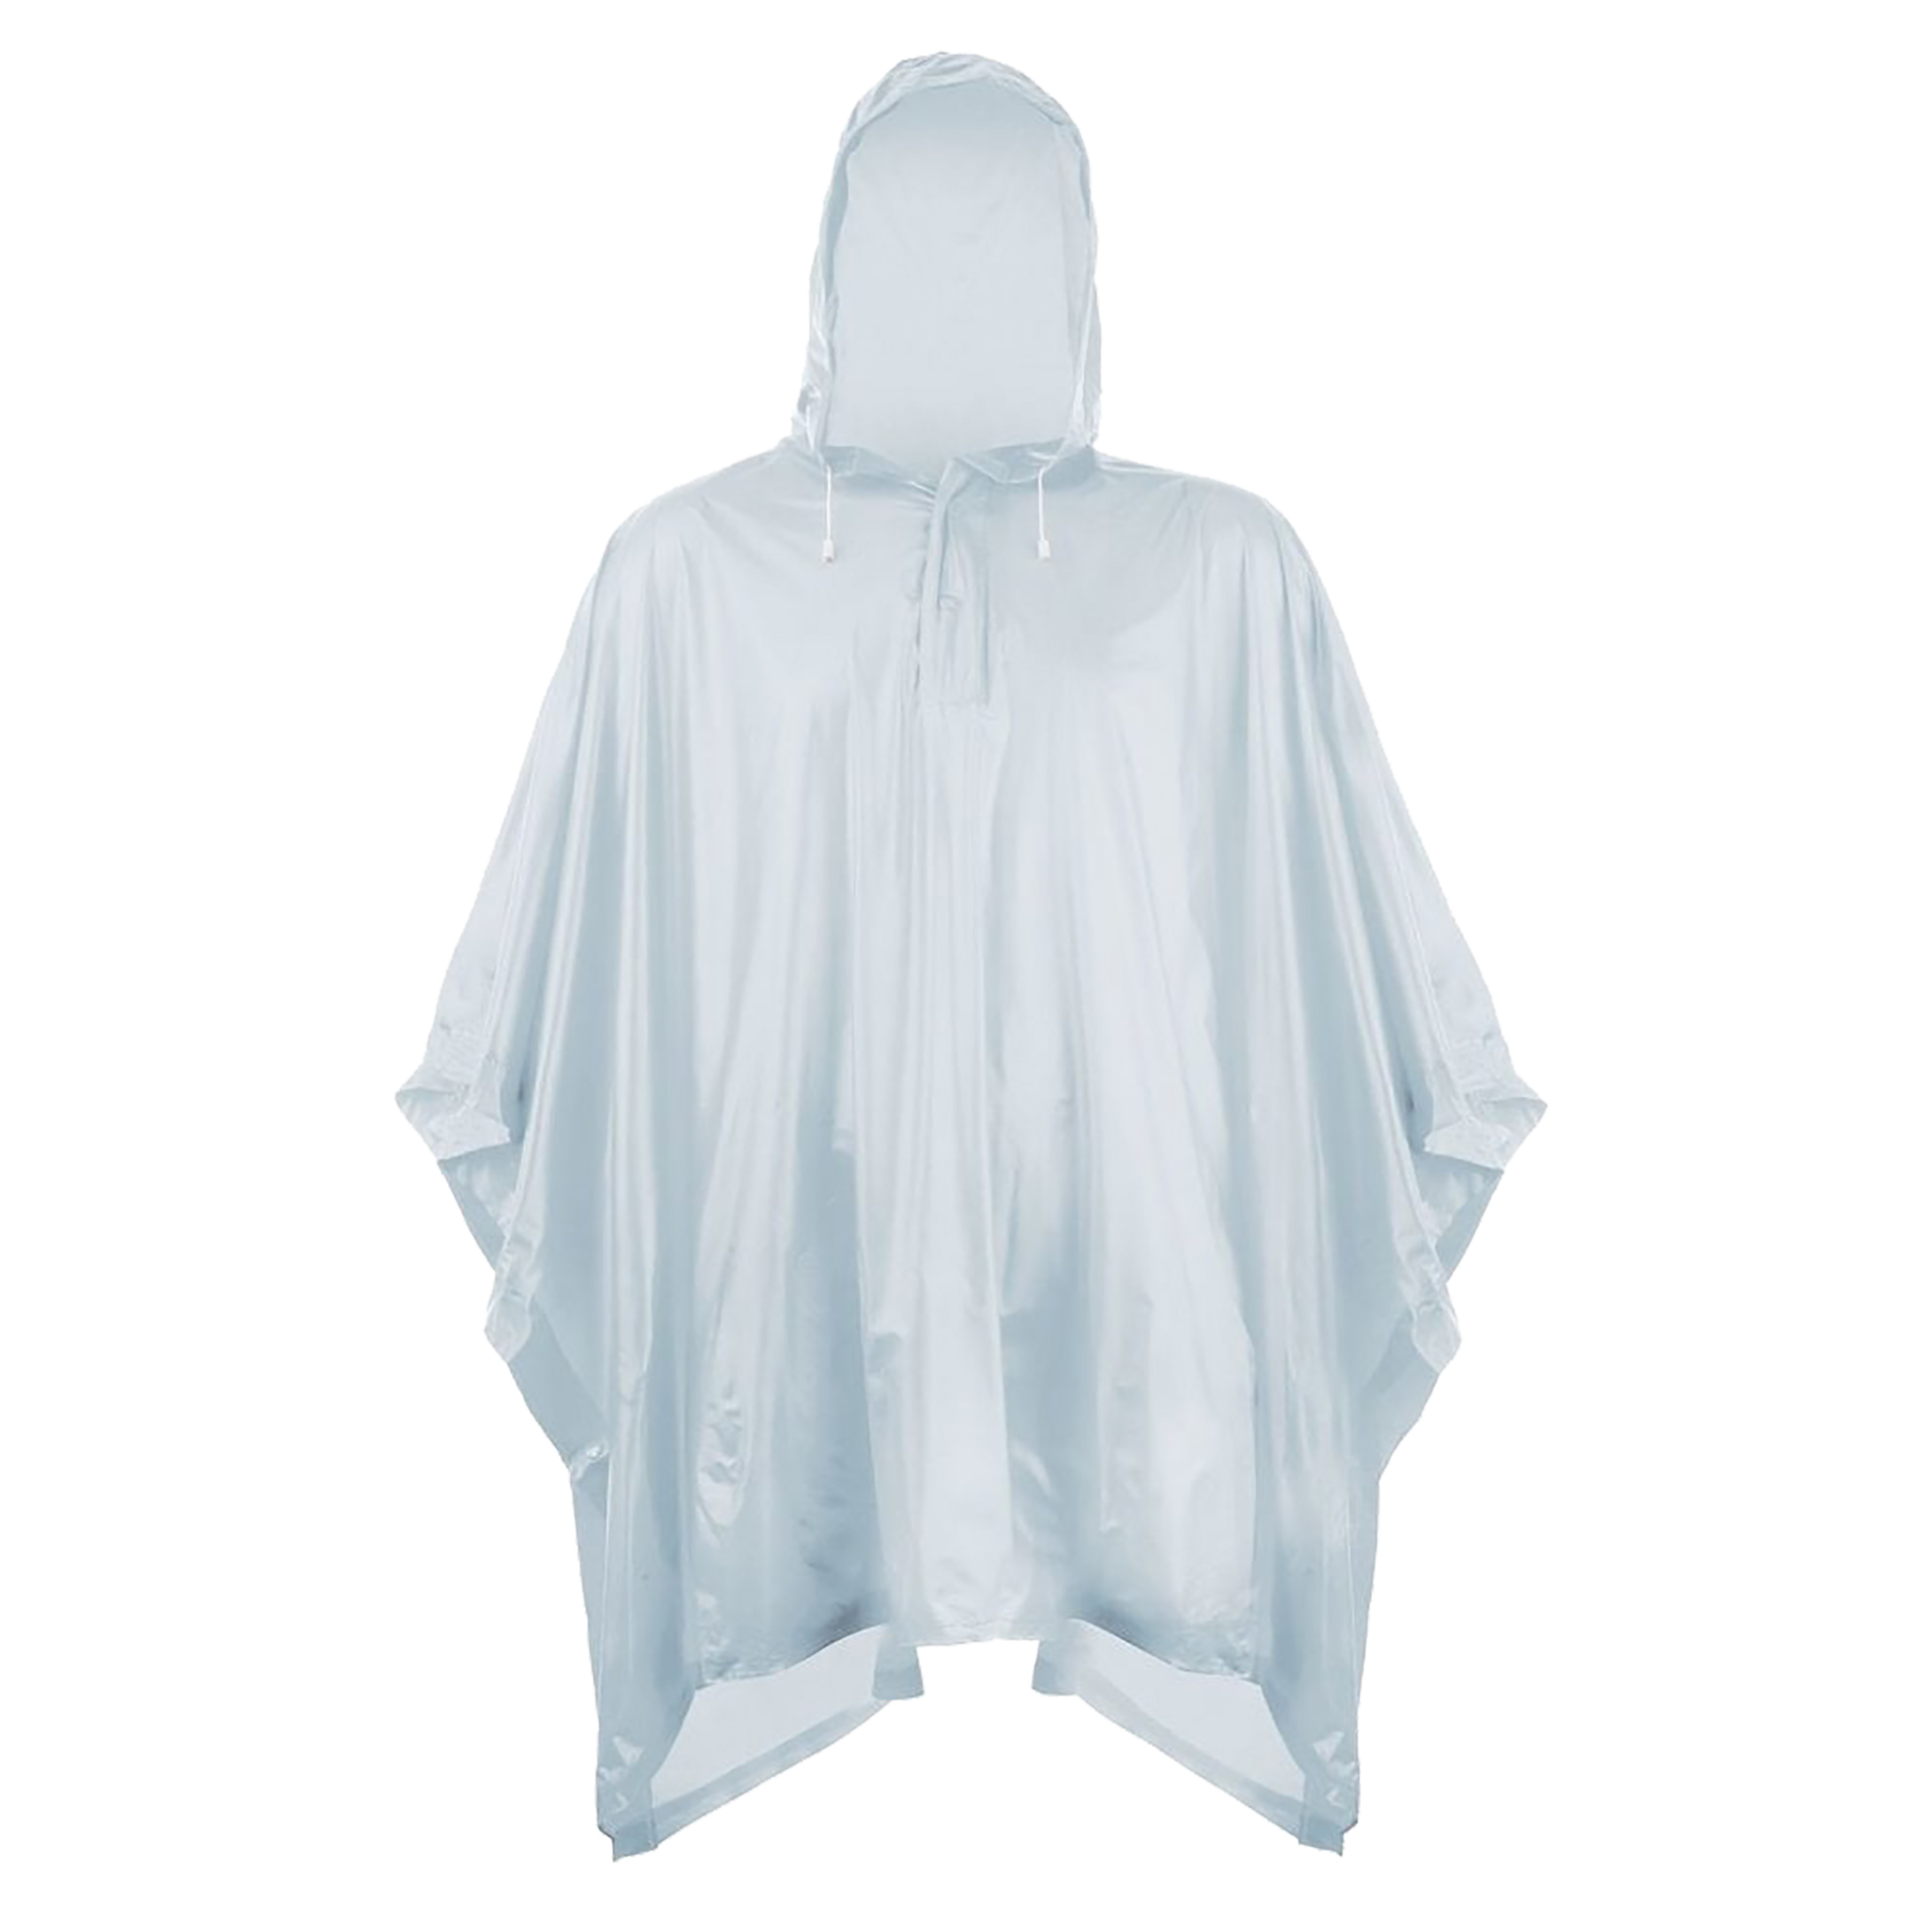 Poncho De Plástico Reutilizable Con Capucha Universal Textiles (Transparente) - transparente - 